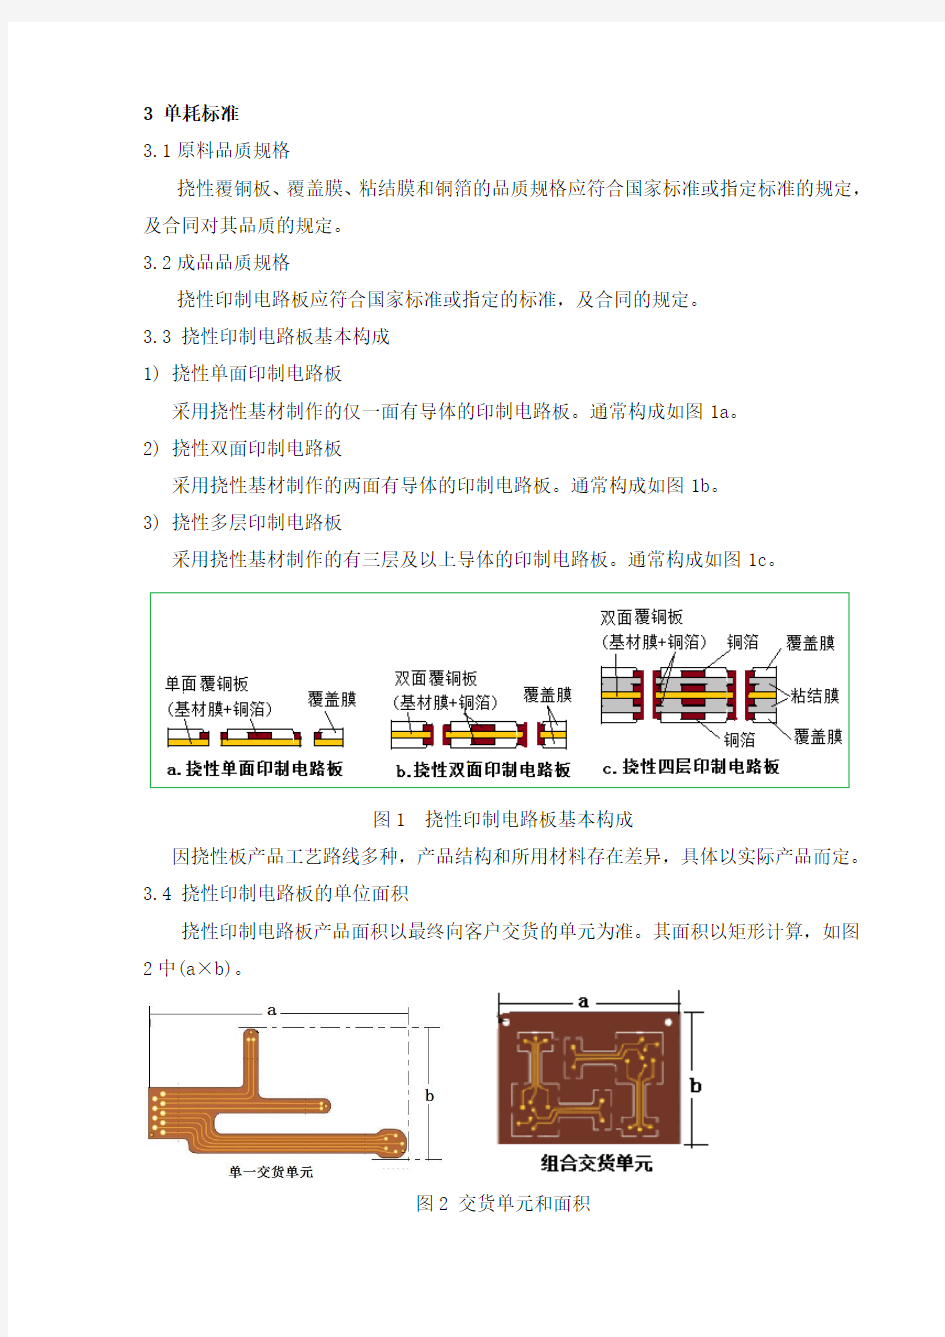 线路板加工过程损耗-中国印制电路行业协会